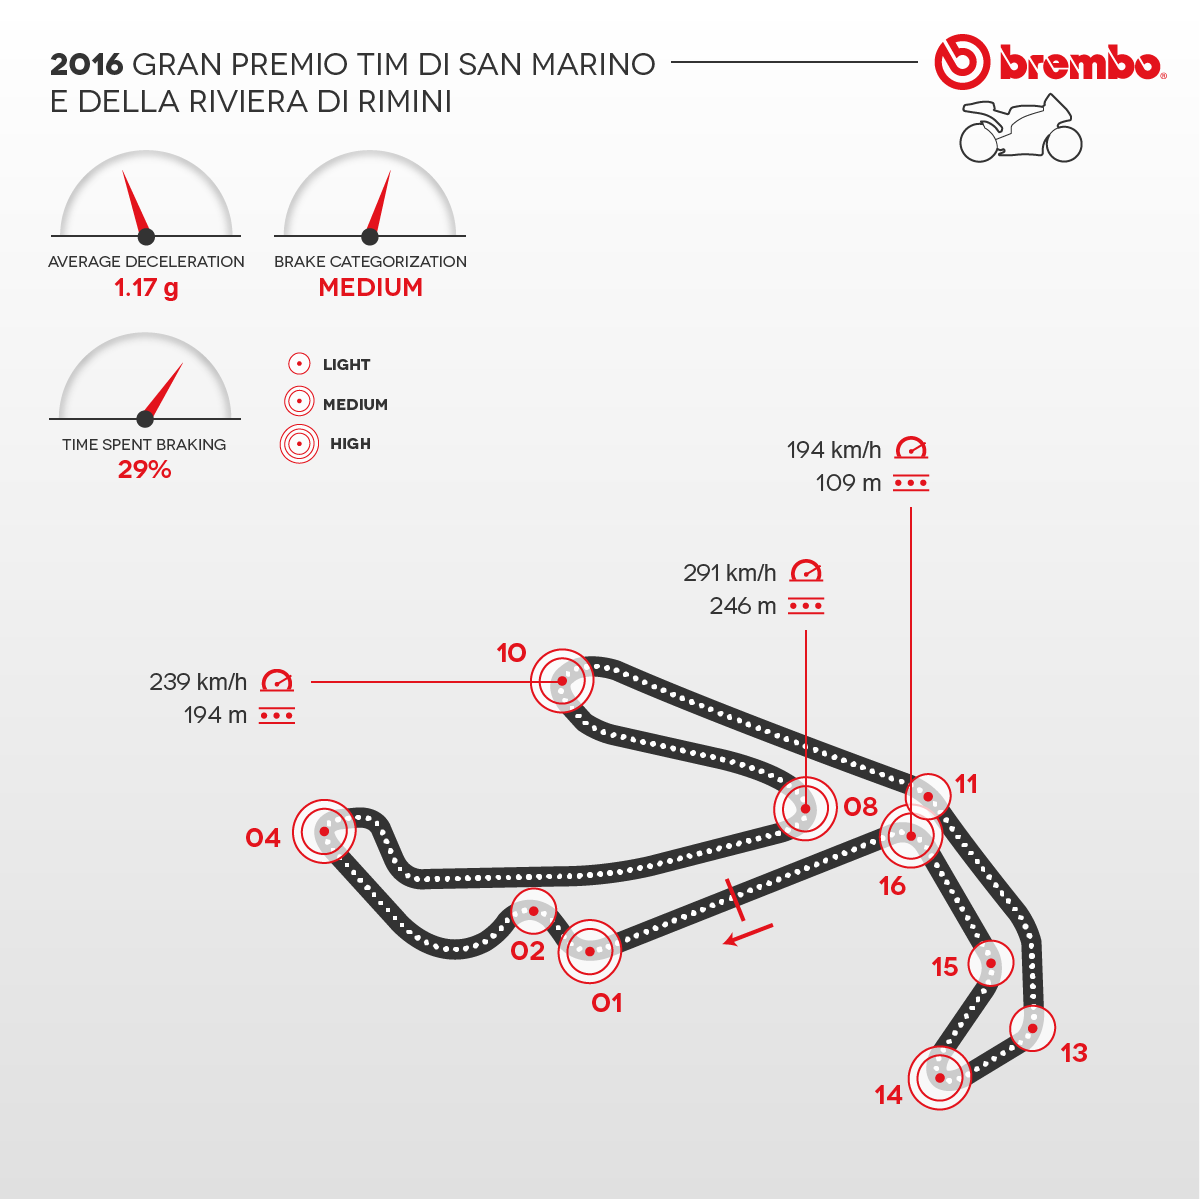 Rappresentazione dettagliata del circuito di San Marino e della Riviera di Rimini 2016 con dettaglio curve